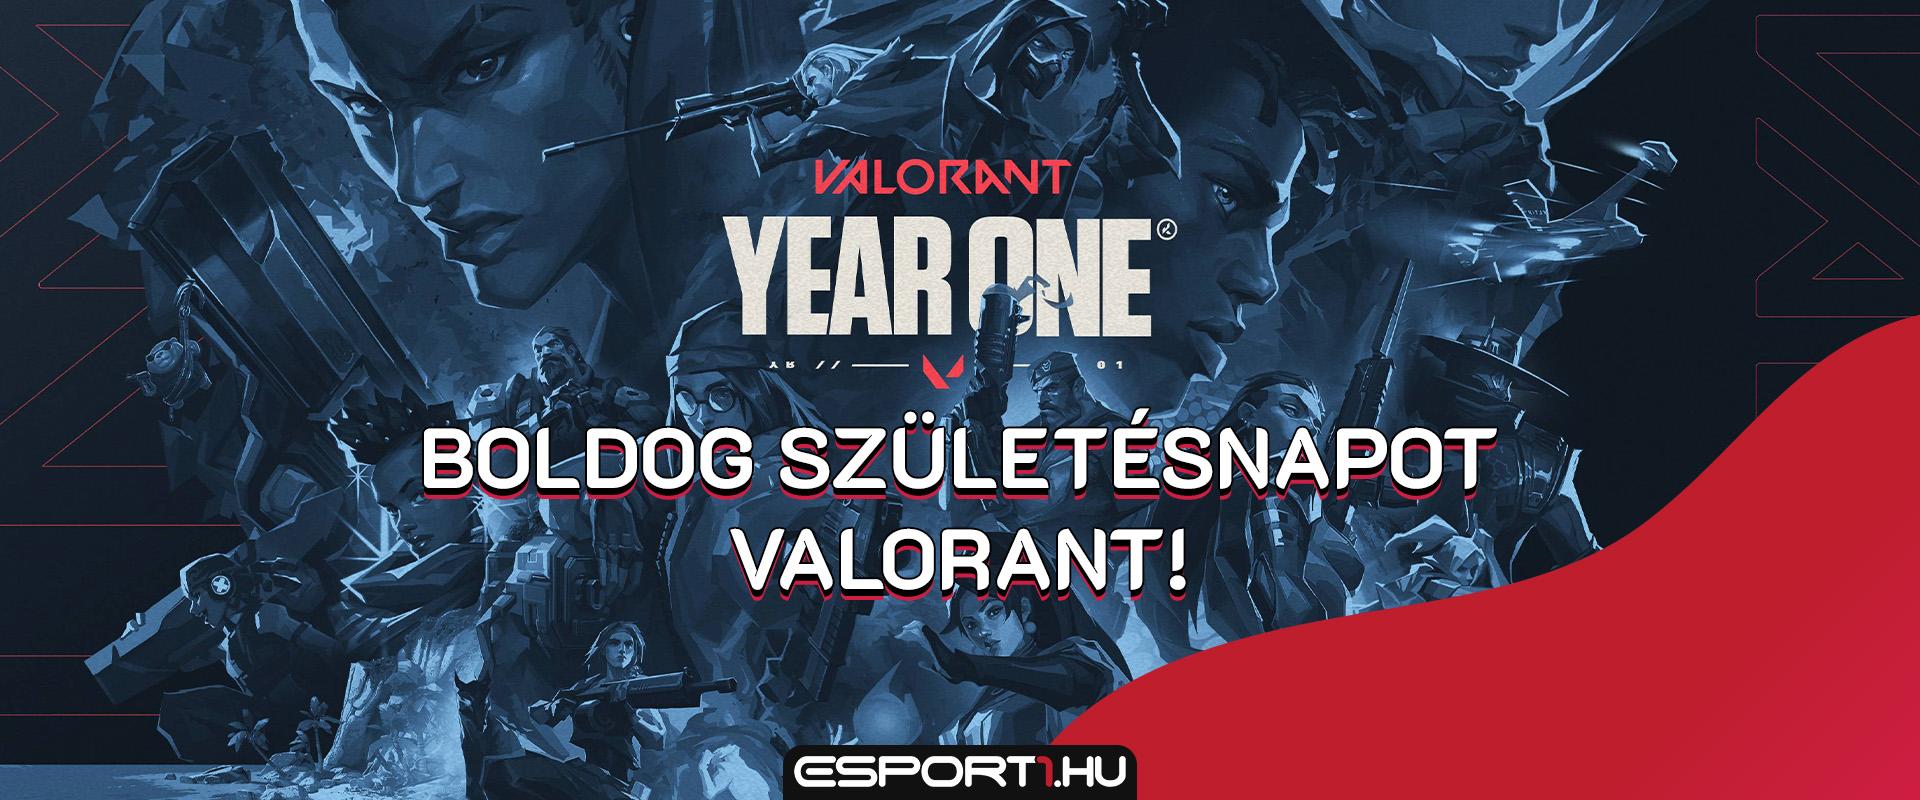 Első évét ünnepli és új platformon is megjelenik a Magyarországon is népszerű VALORANT